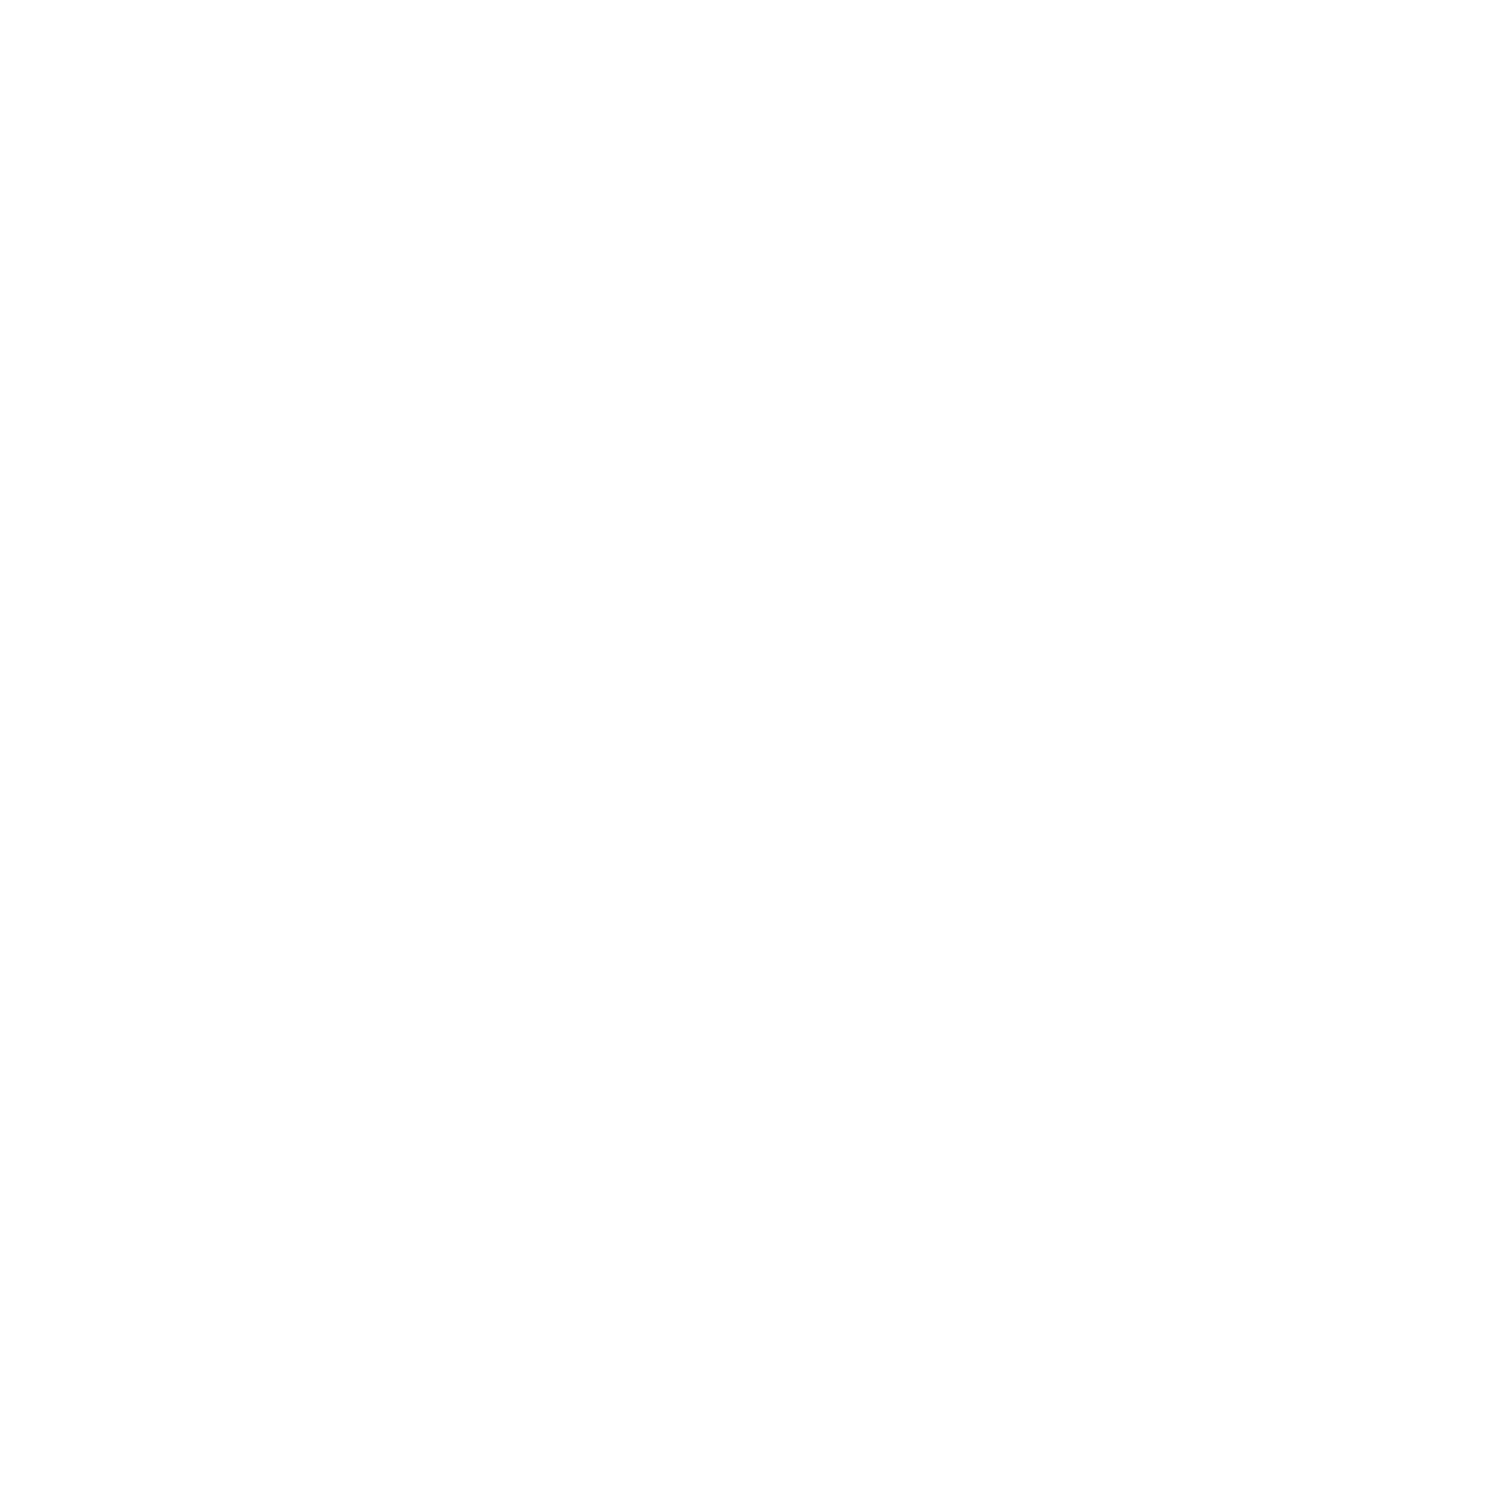 Sonja R. Price Herbert 